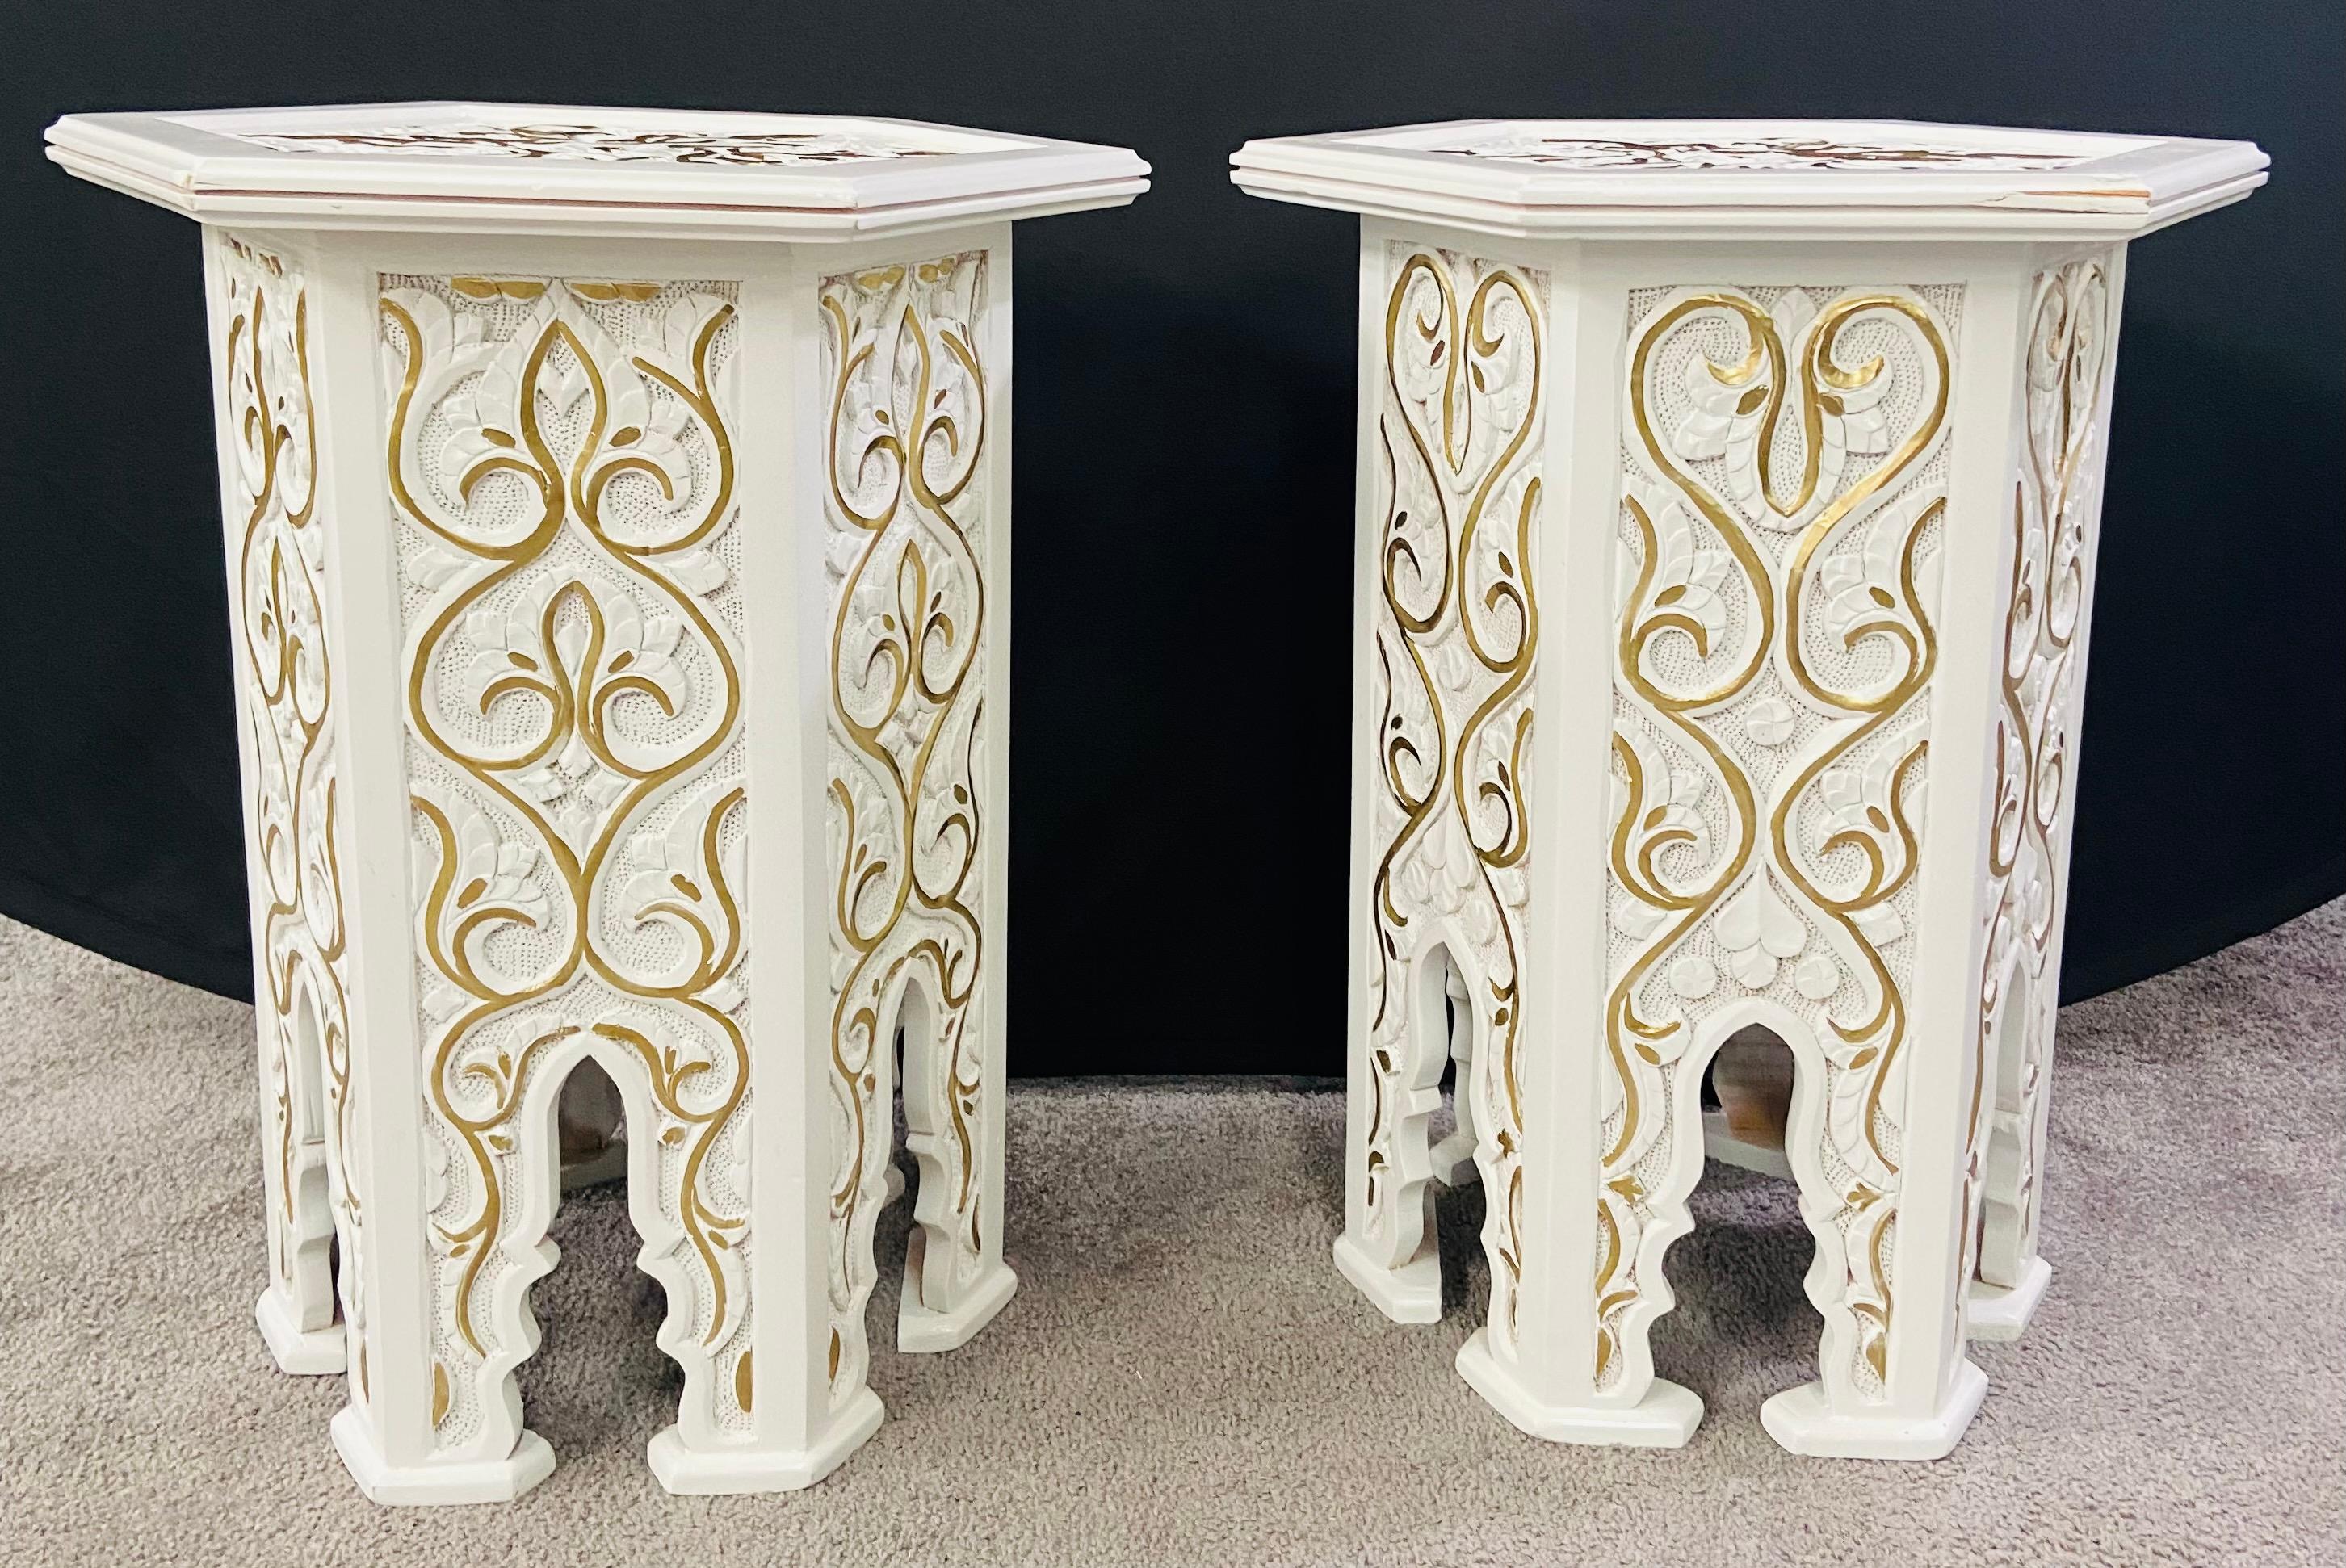 Ein exquisites Paar Beistelltische im marokkanischen Hollywood-Regency-Stil mit einer sechseckigen Form. Die handgefertigten Tische sind fein weiß gestrichen und mit goldfarbenen Blattmustern und schönen Bögen verziert, einem Grundelement der